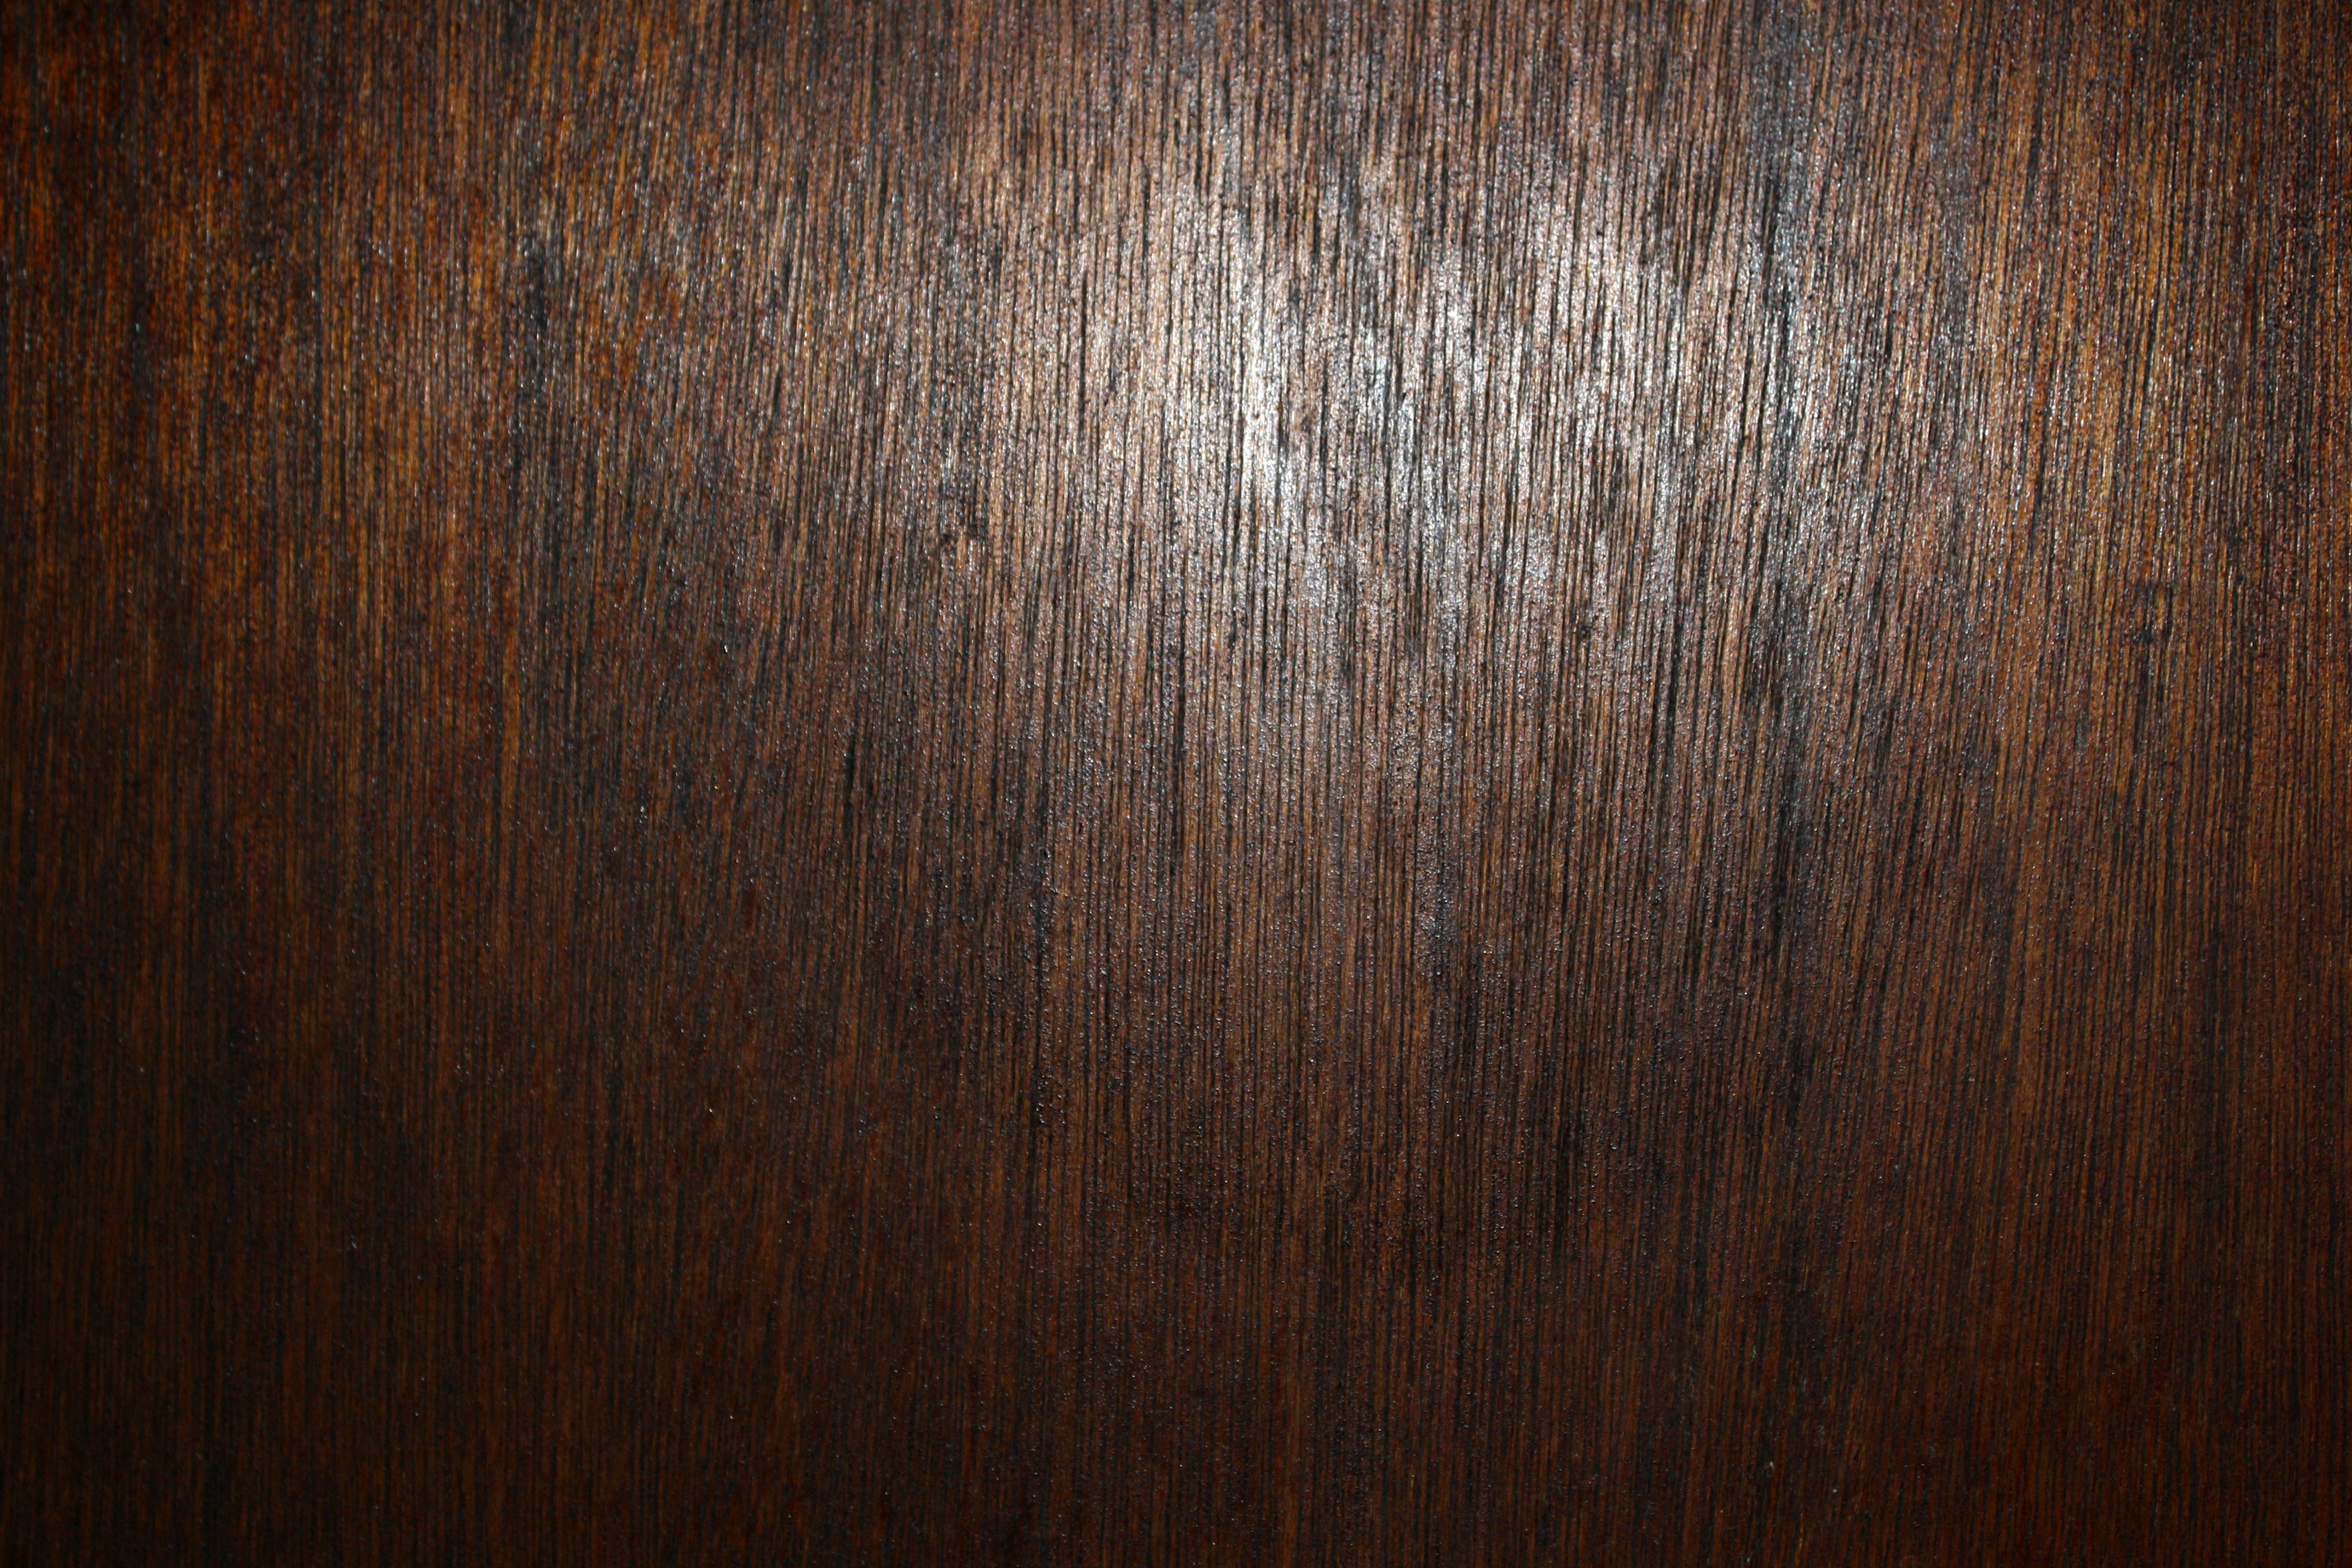 Dark Wood Grain Texture Picture | Free Photograph | Photos Public Domain